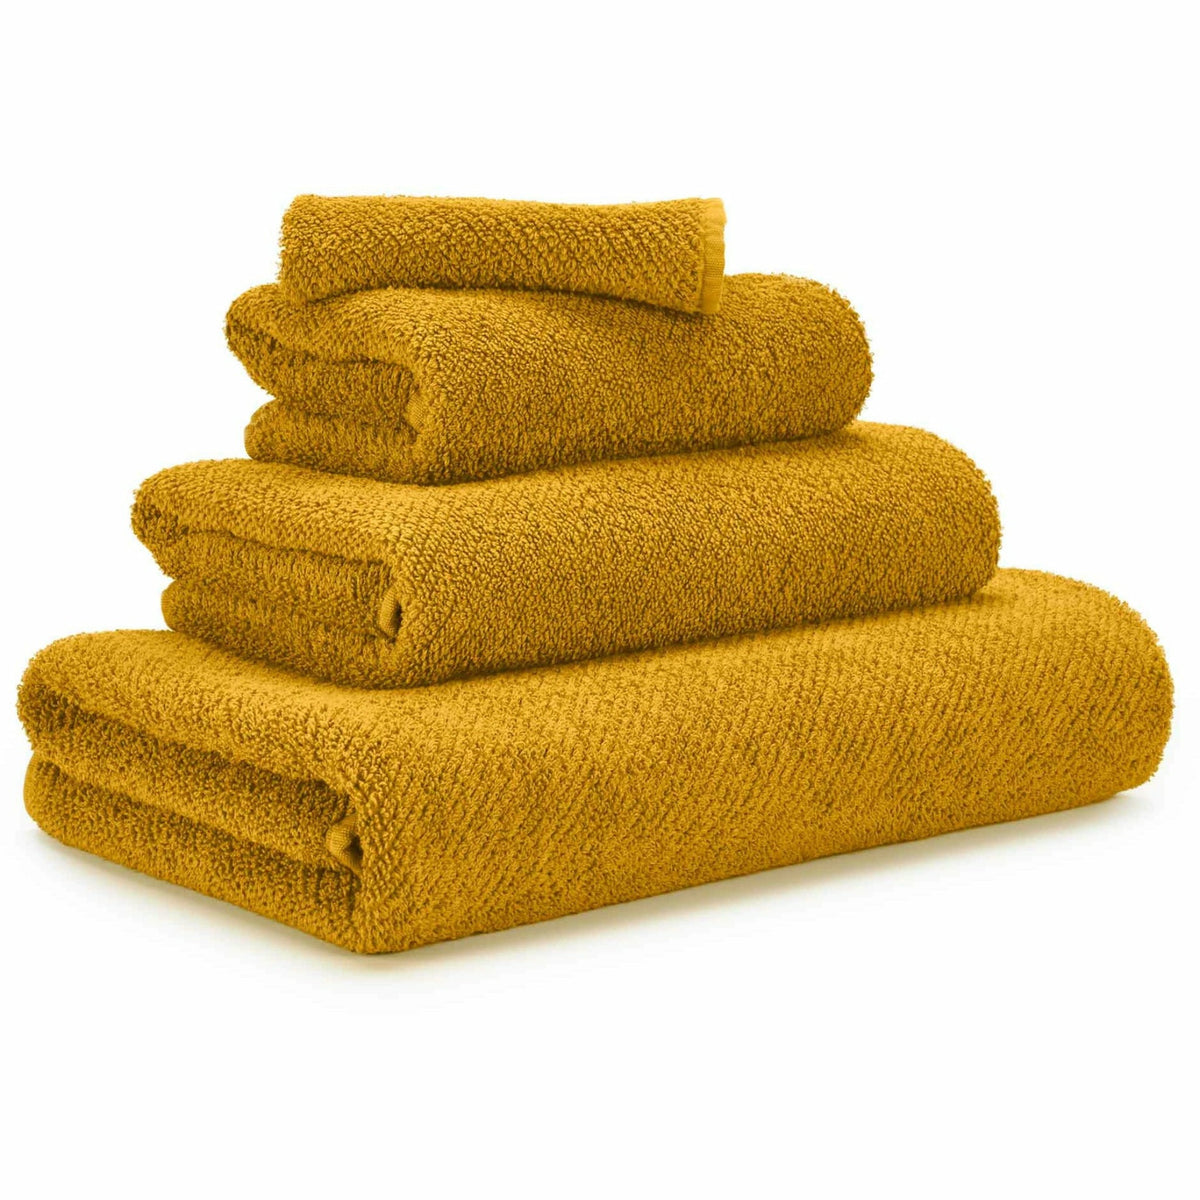 Abyss Twill Bath Towels - Safran